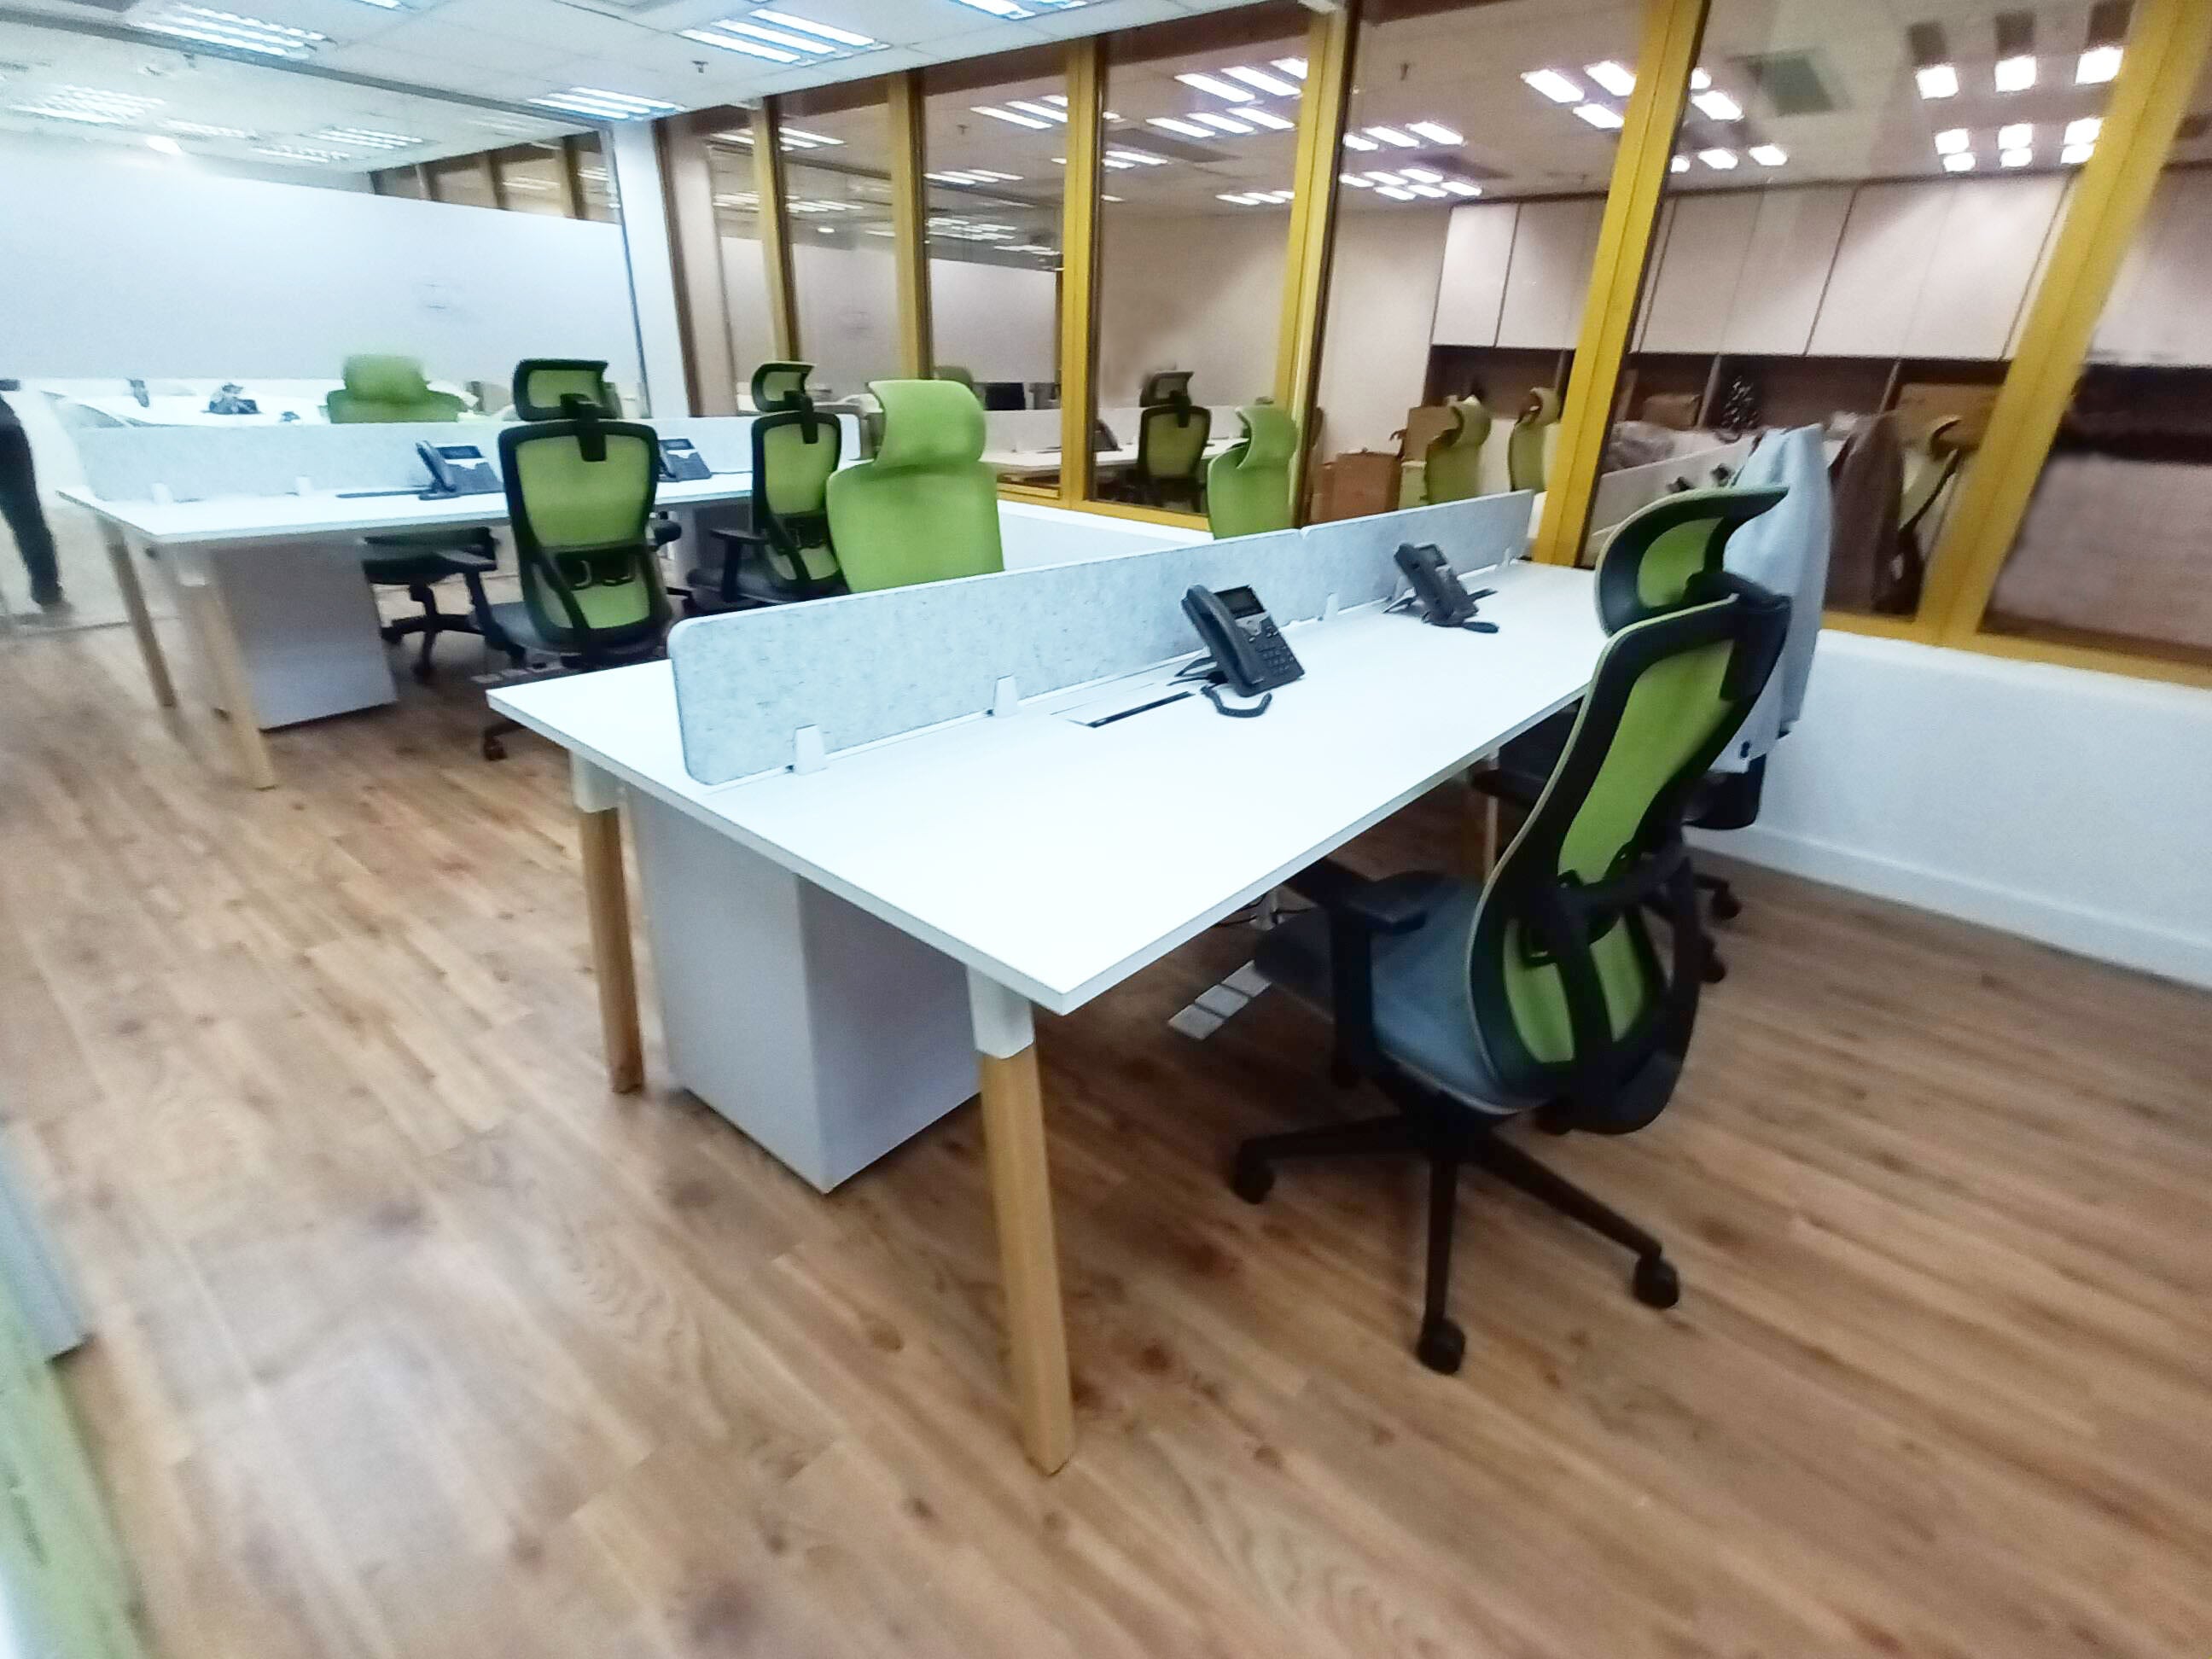 辦公枱, 小型辦公室臺, 白色辦公室, 吸音板屏風, 實木枱脚, 員工工作枱, office desk, white office desk, hot desk, custom office furniture, acoustic partition 